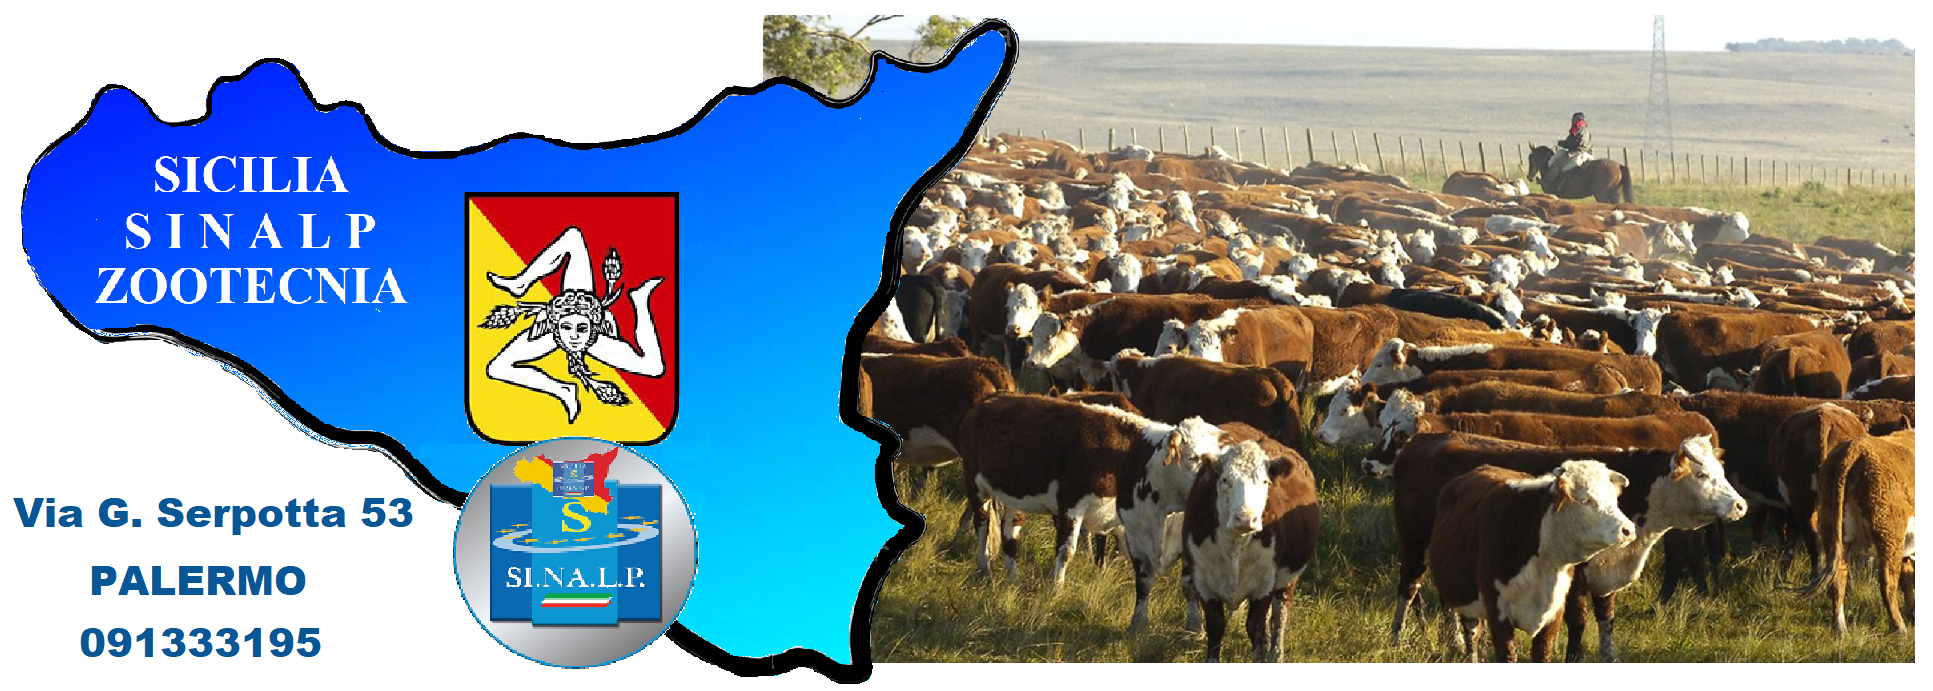 Gli allevatori siciliani tornano a vendere il loro bestiame, Sinalp: “In prima linea in difesa dell’agricoltura”